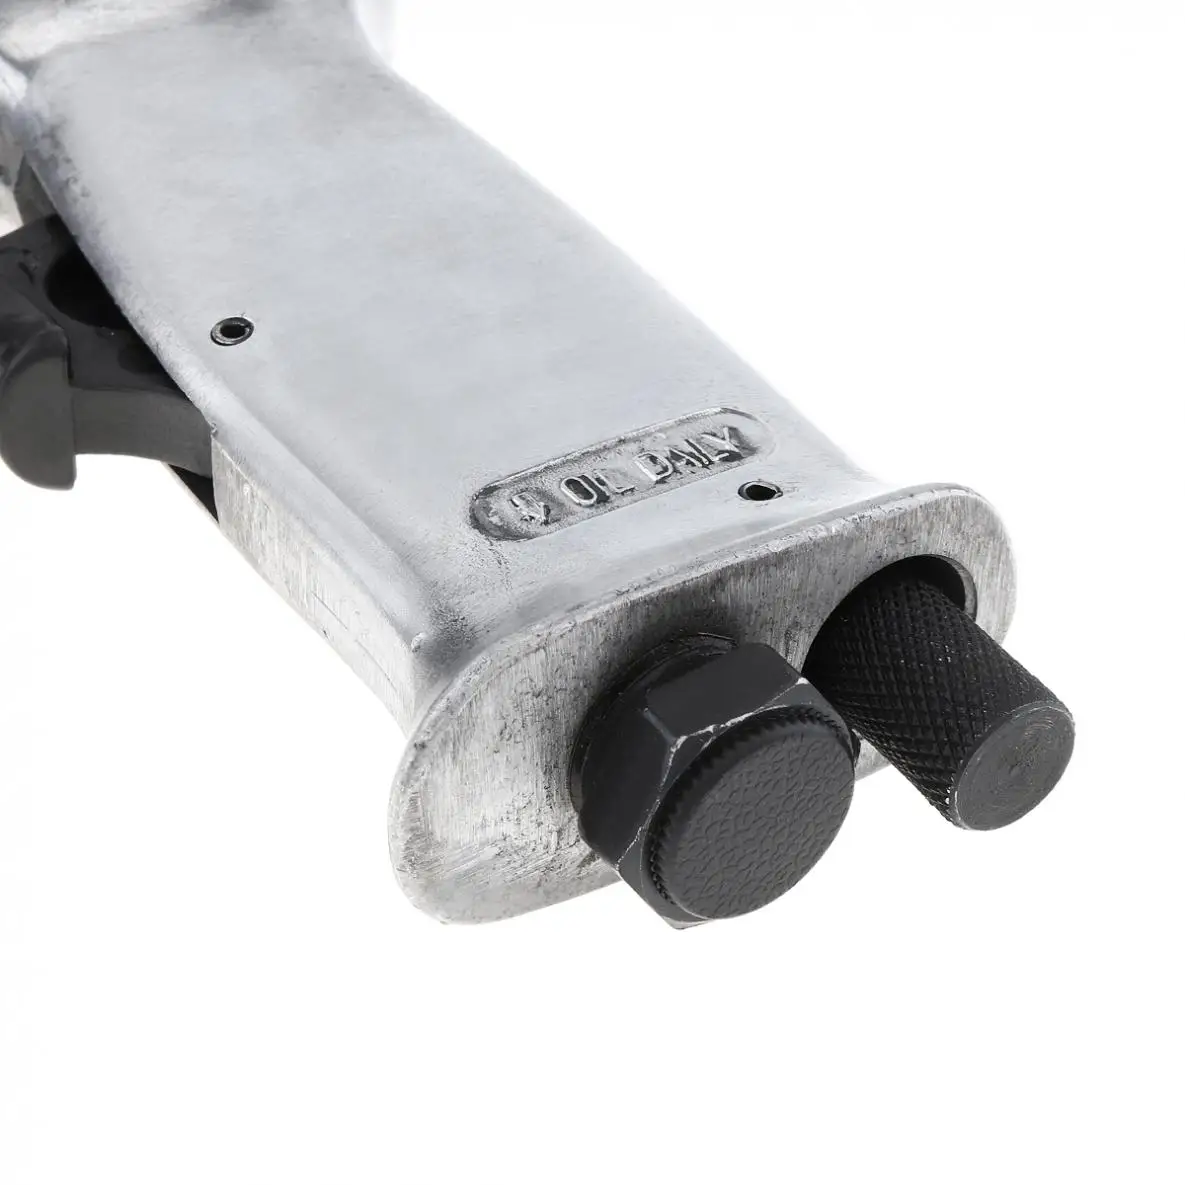 TORO 9190 190 мм Профессиональный Ручной Пистолет Газовые лопаты воздушный молоток небольшой для удаления ржавчины пневматические инструменты с 4 зубьями